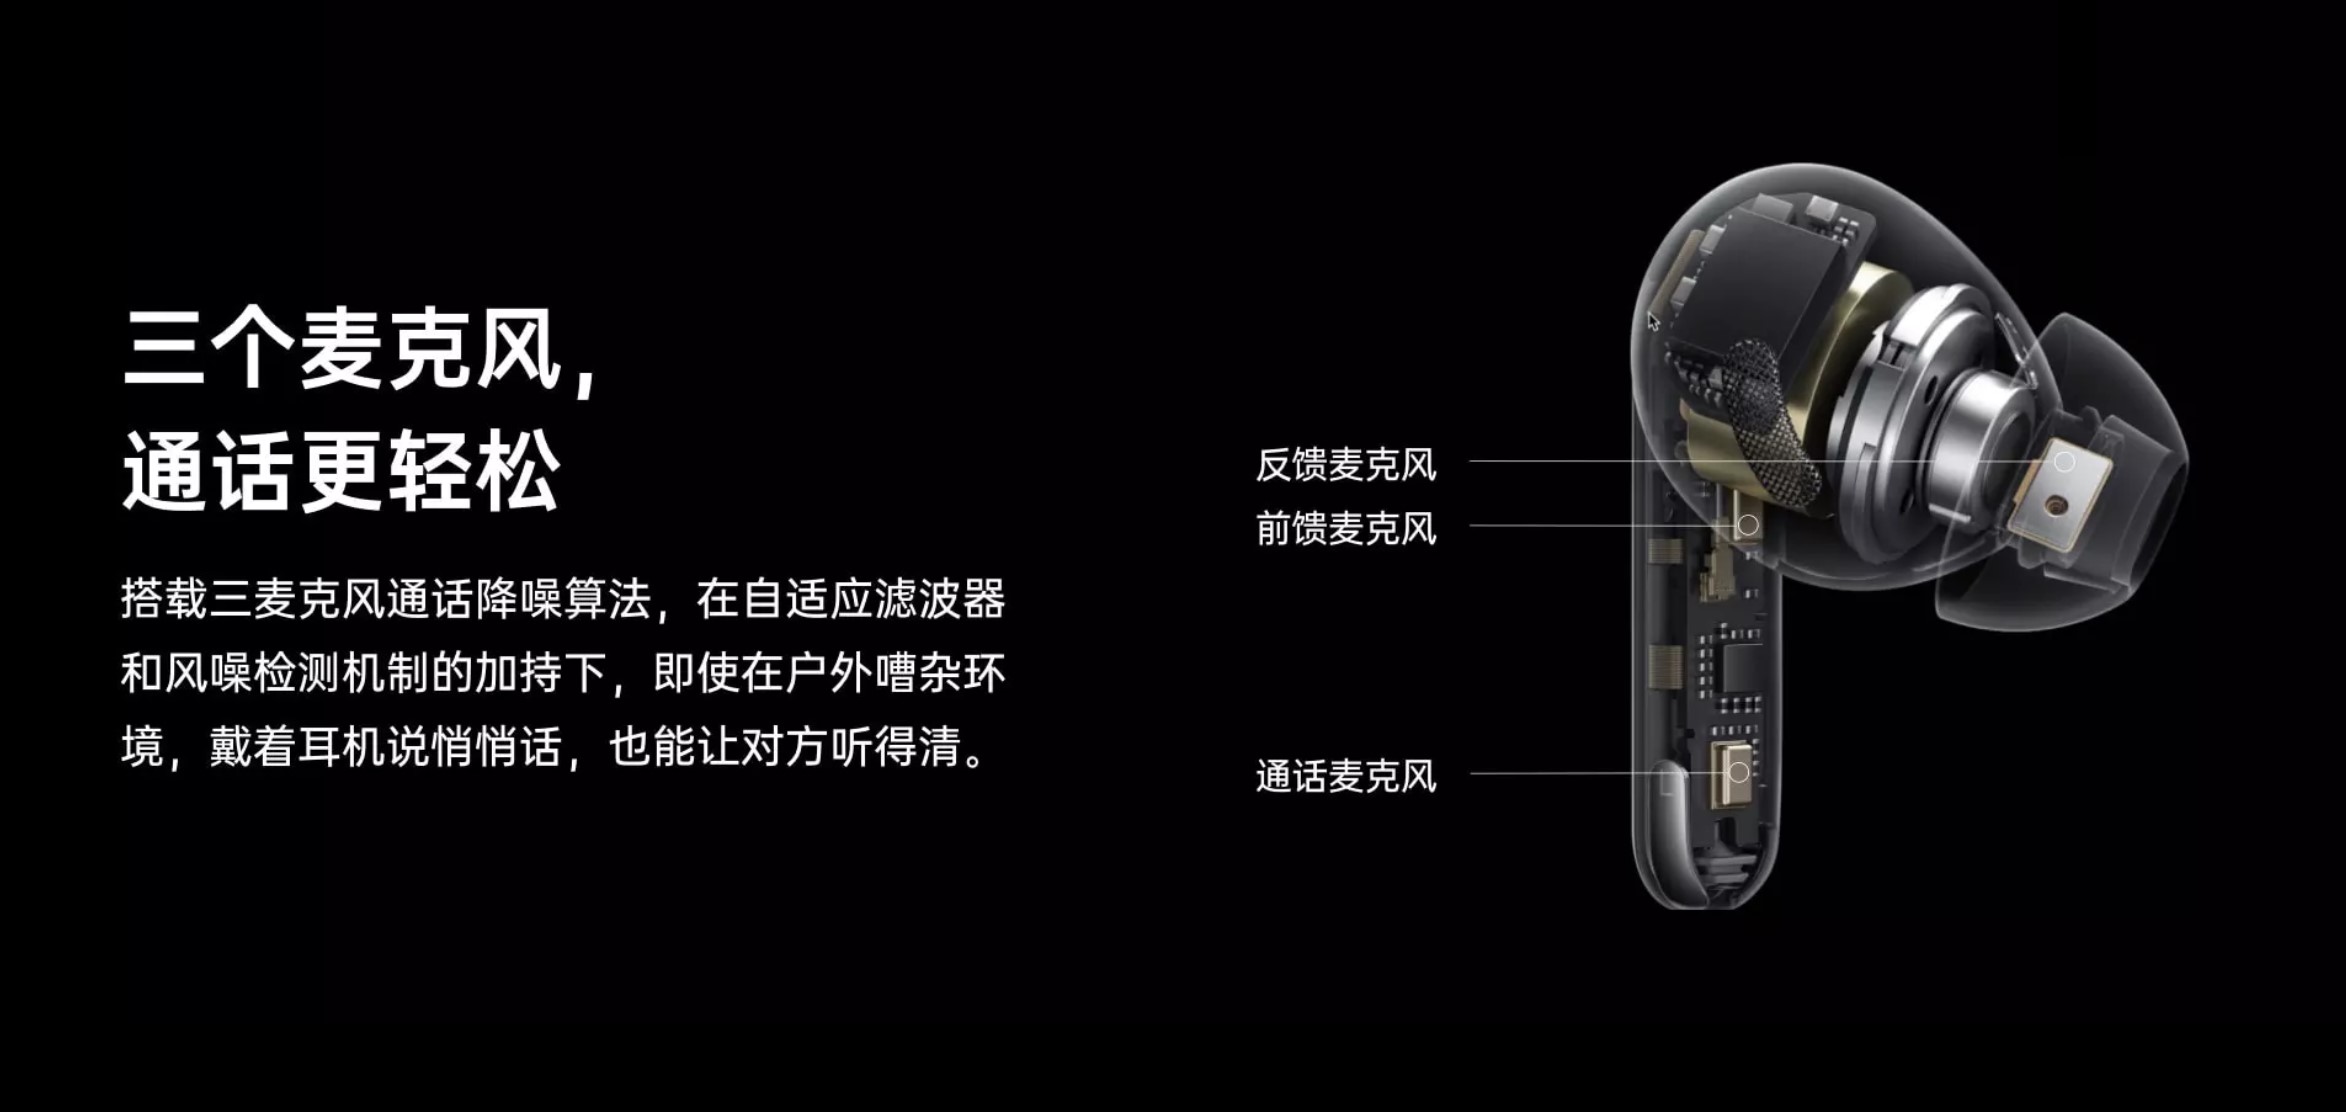 OPPO Enco X正式发售 声加科技三麦克风通话降噪方案再升级